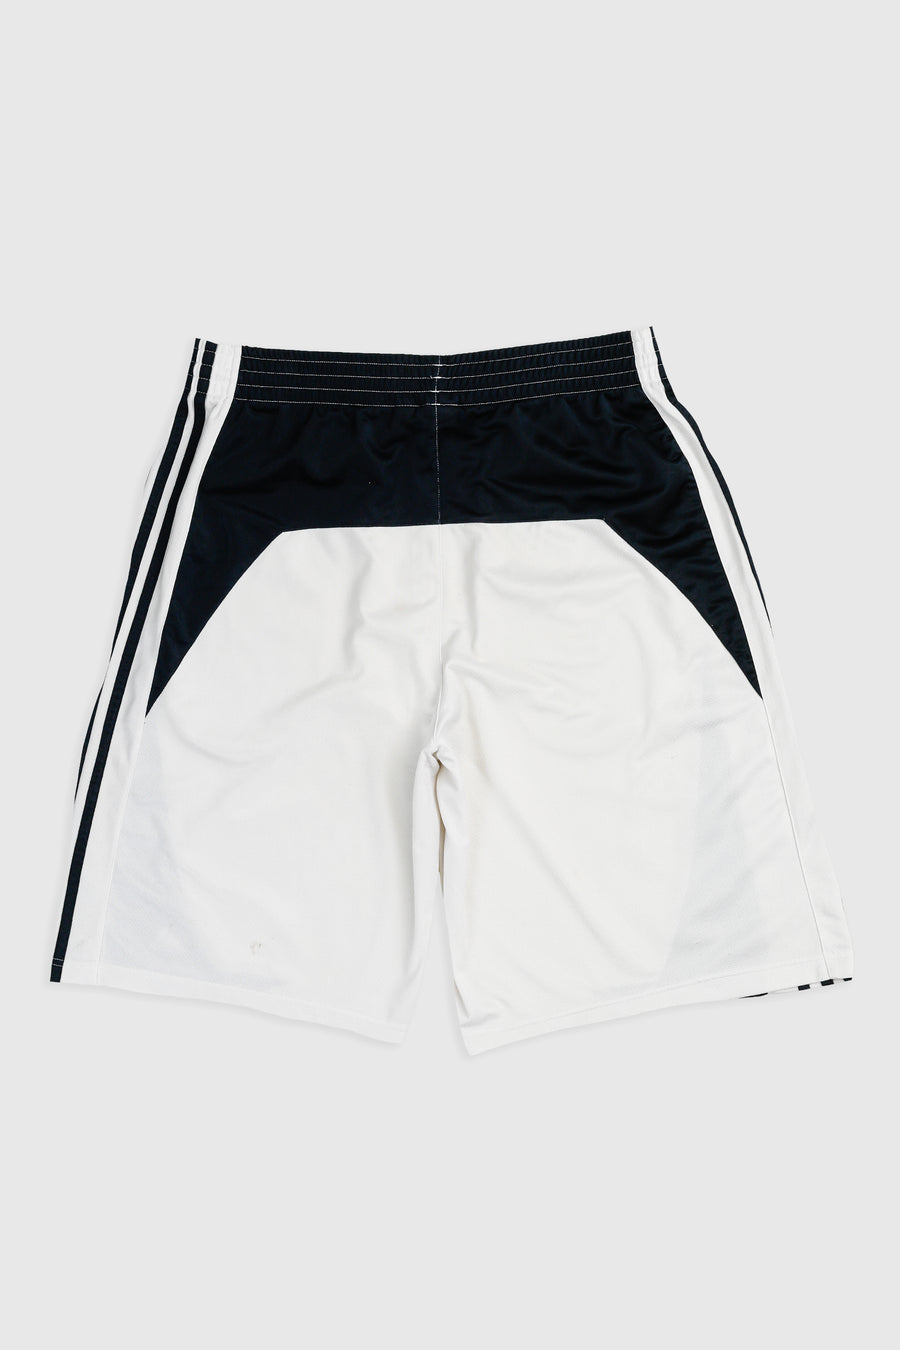 Vintage Adidas Basketball Shorts - L